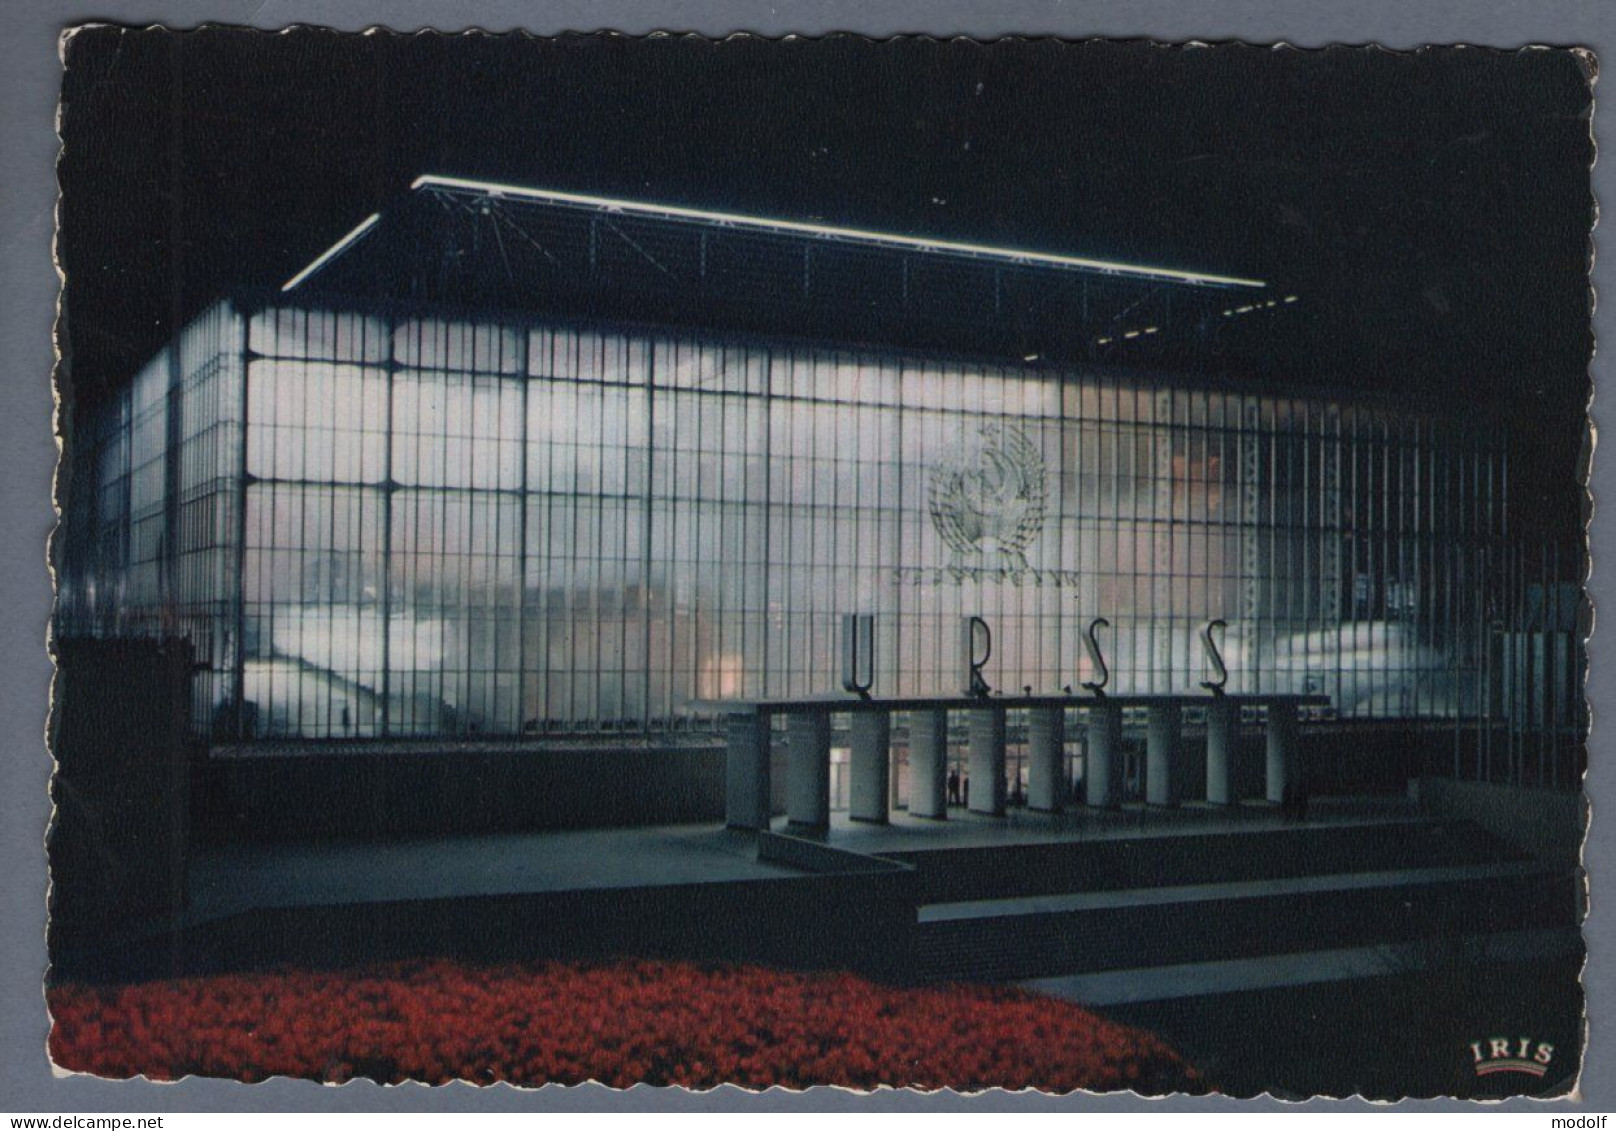 CPSM - Belgique - Exposition Universelle De Bruxelles 1958 - Pavillon De L'U.R.S.S. - Vue Nocturne - Non Circulée - Universal Exhibitions